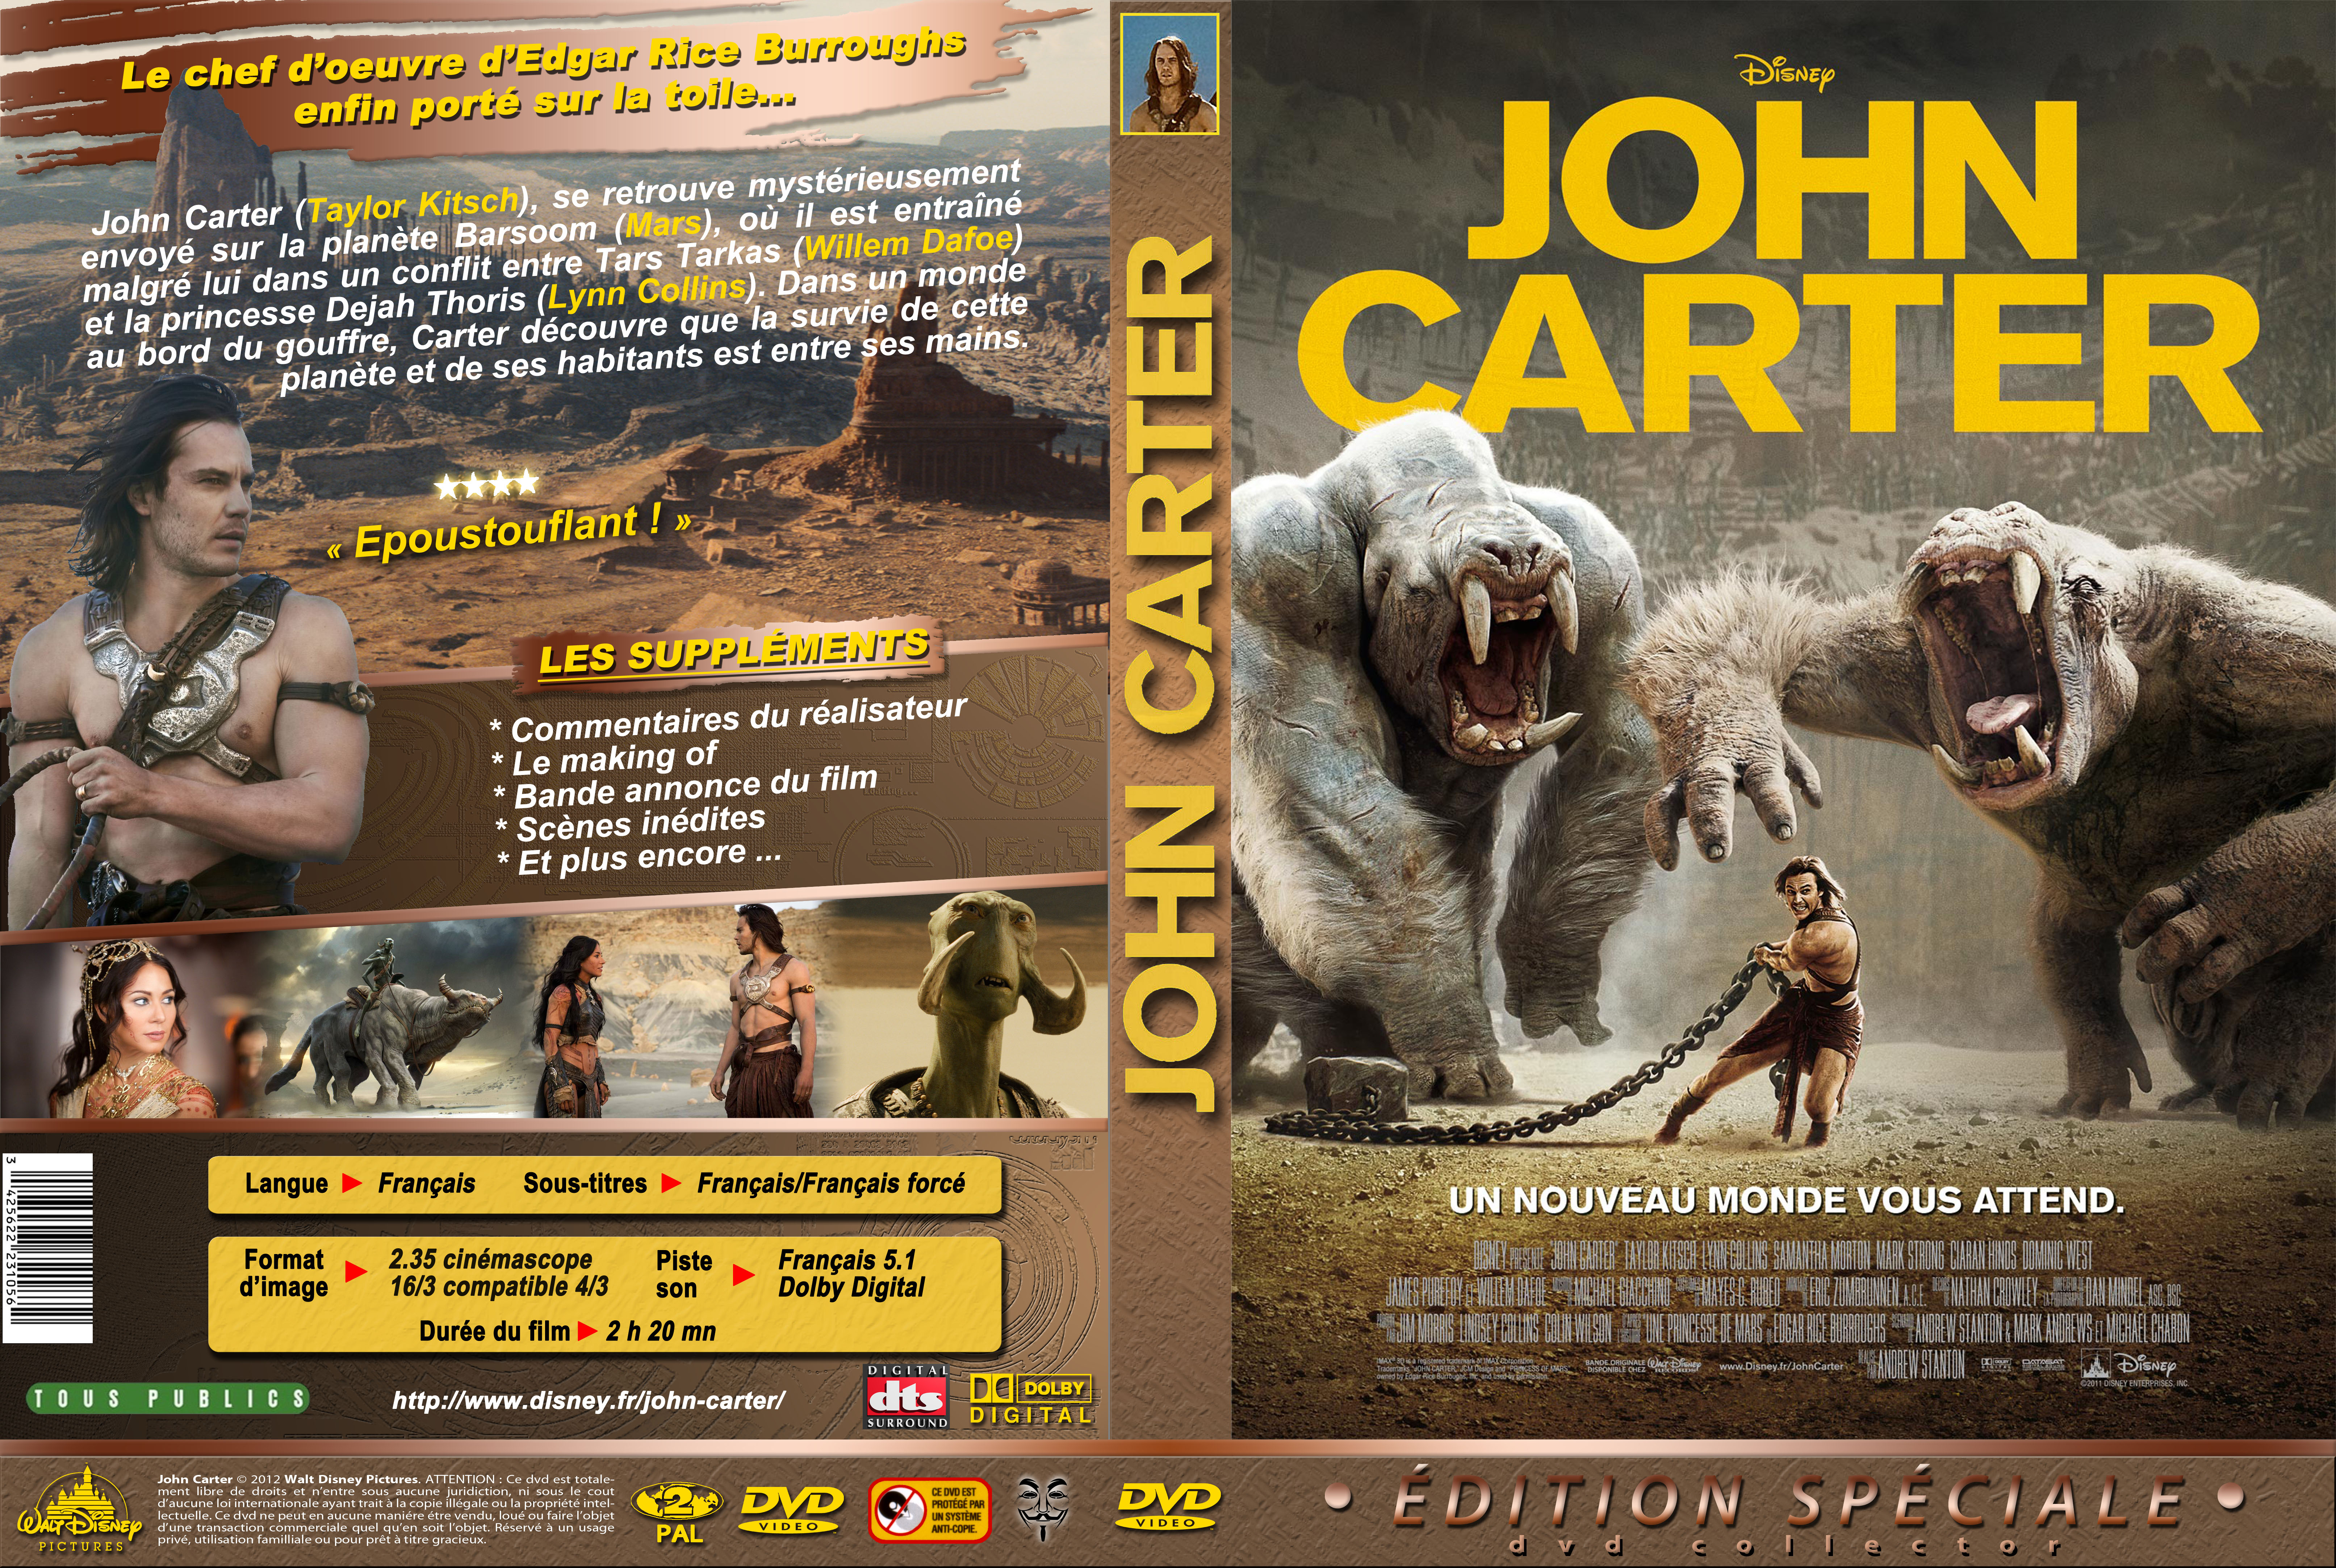 Jaquette DVD John Carter custom v2